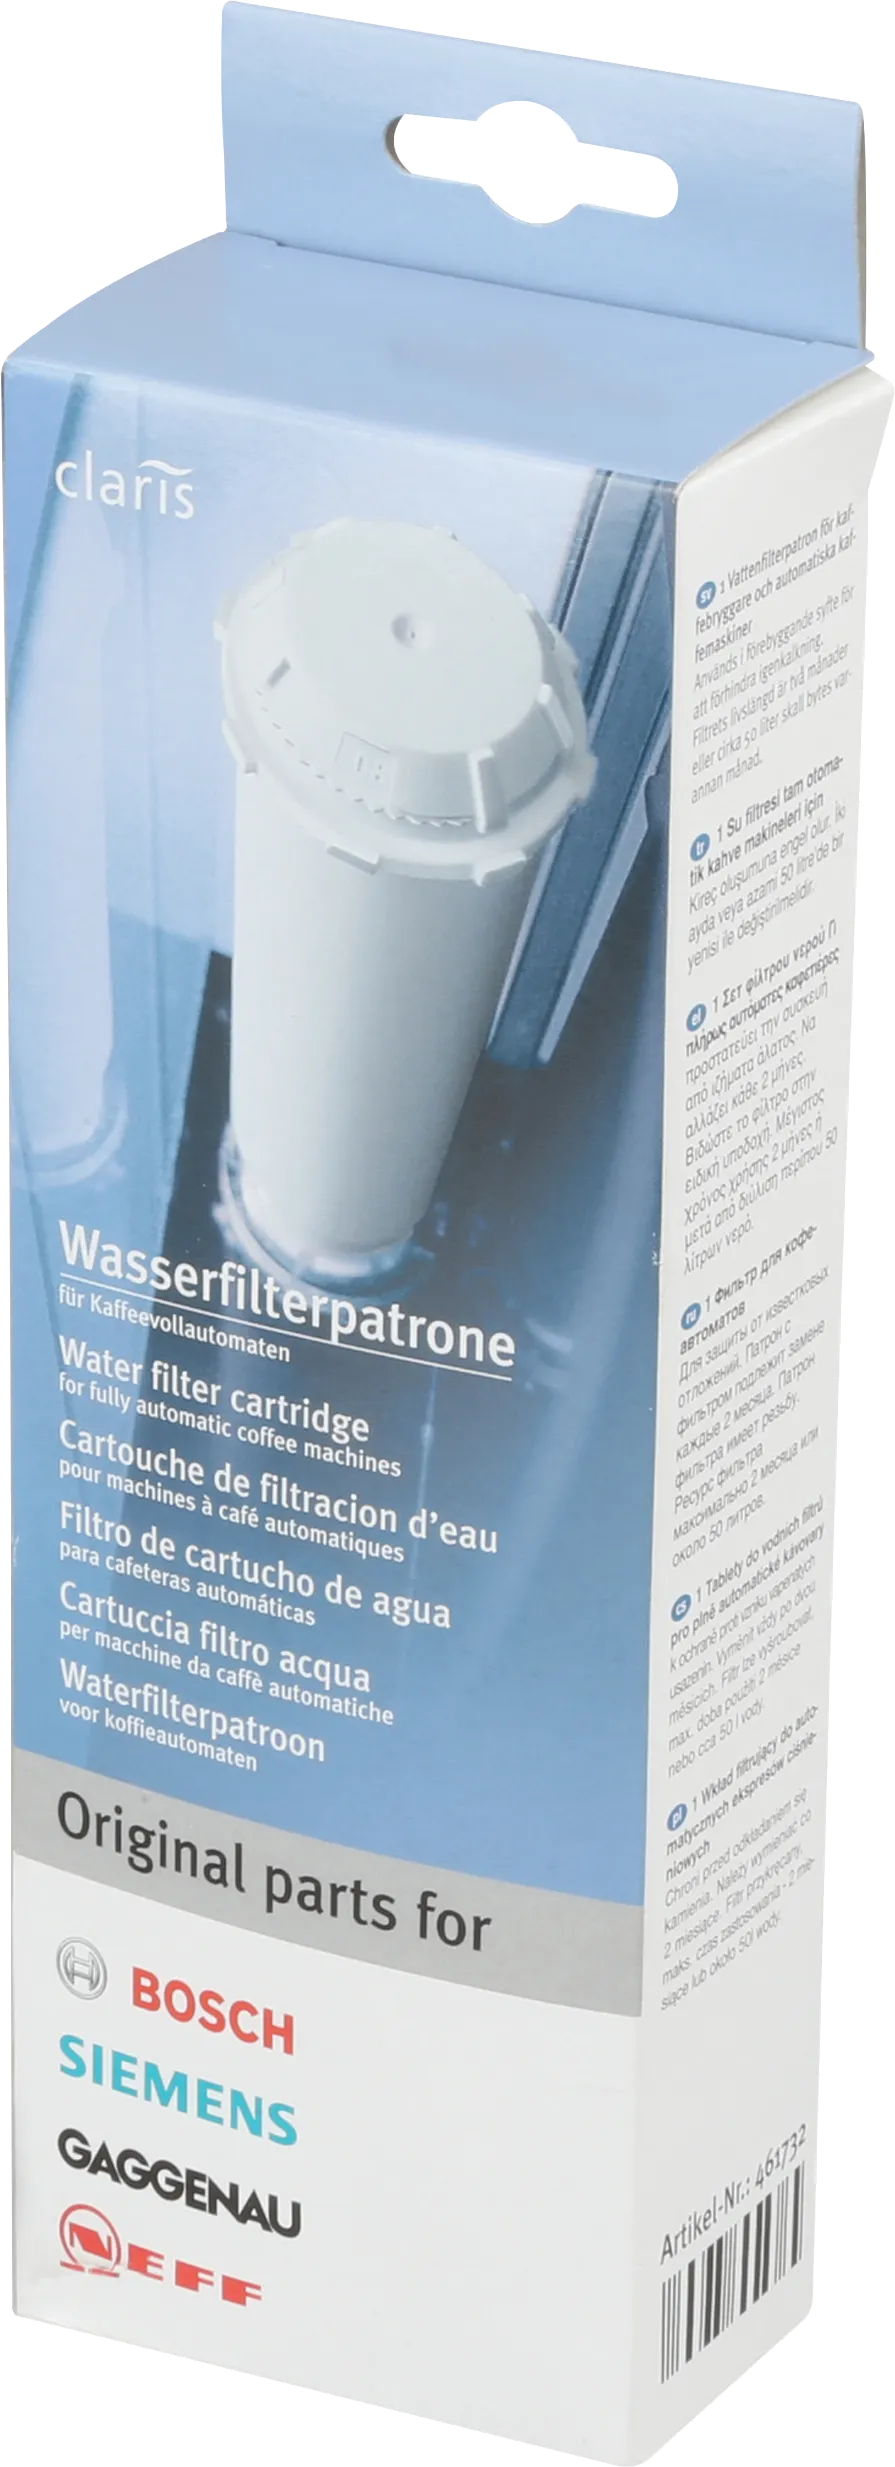 Wasserfilter CLARIS Wasserfilter (einschraubbar) 